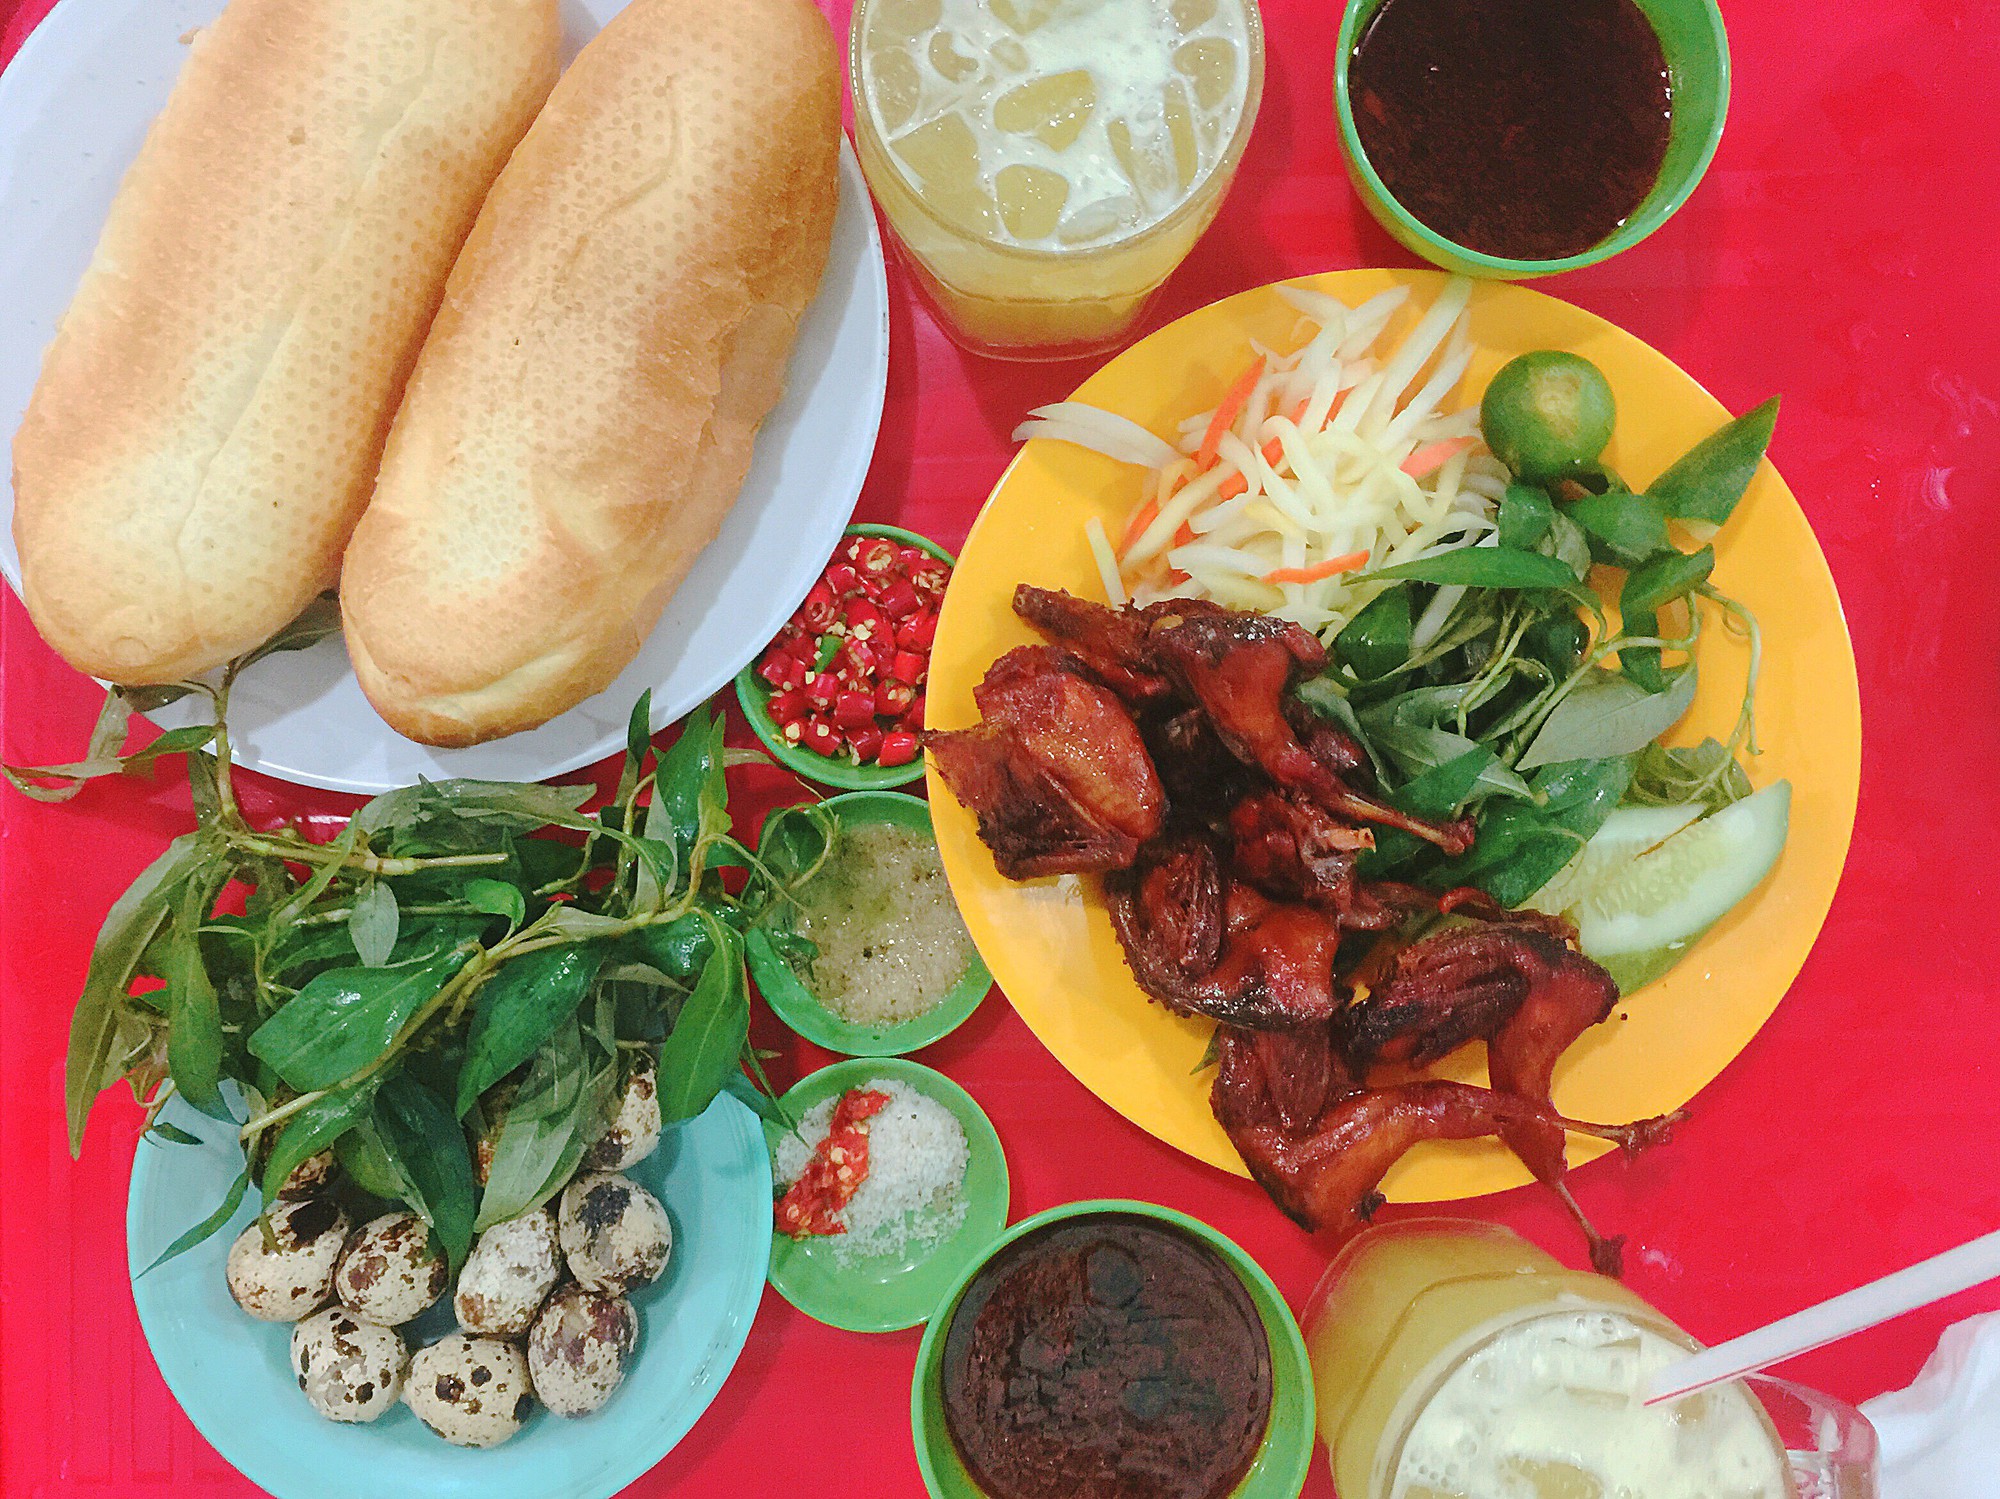 Kinh nghiệm du lịch hè Phú Yên mới nhất - Địa điểm ăn uống Phú Yên mà bạn không thể bỏ qua